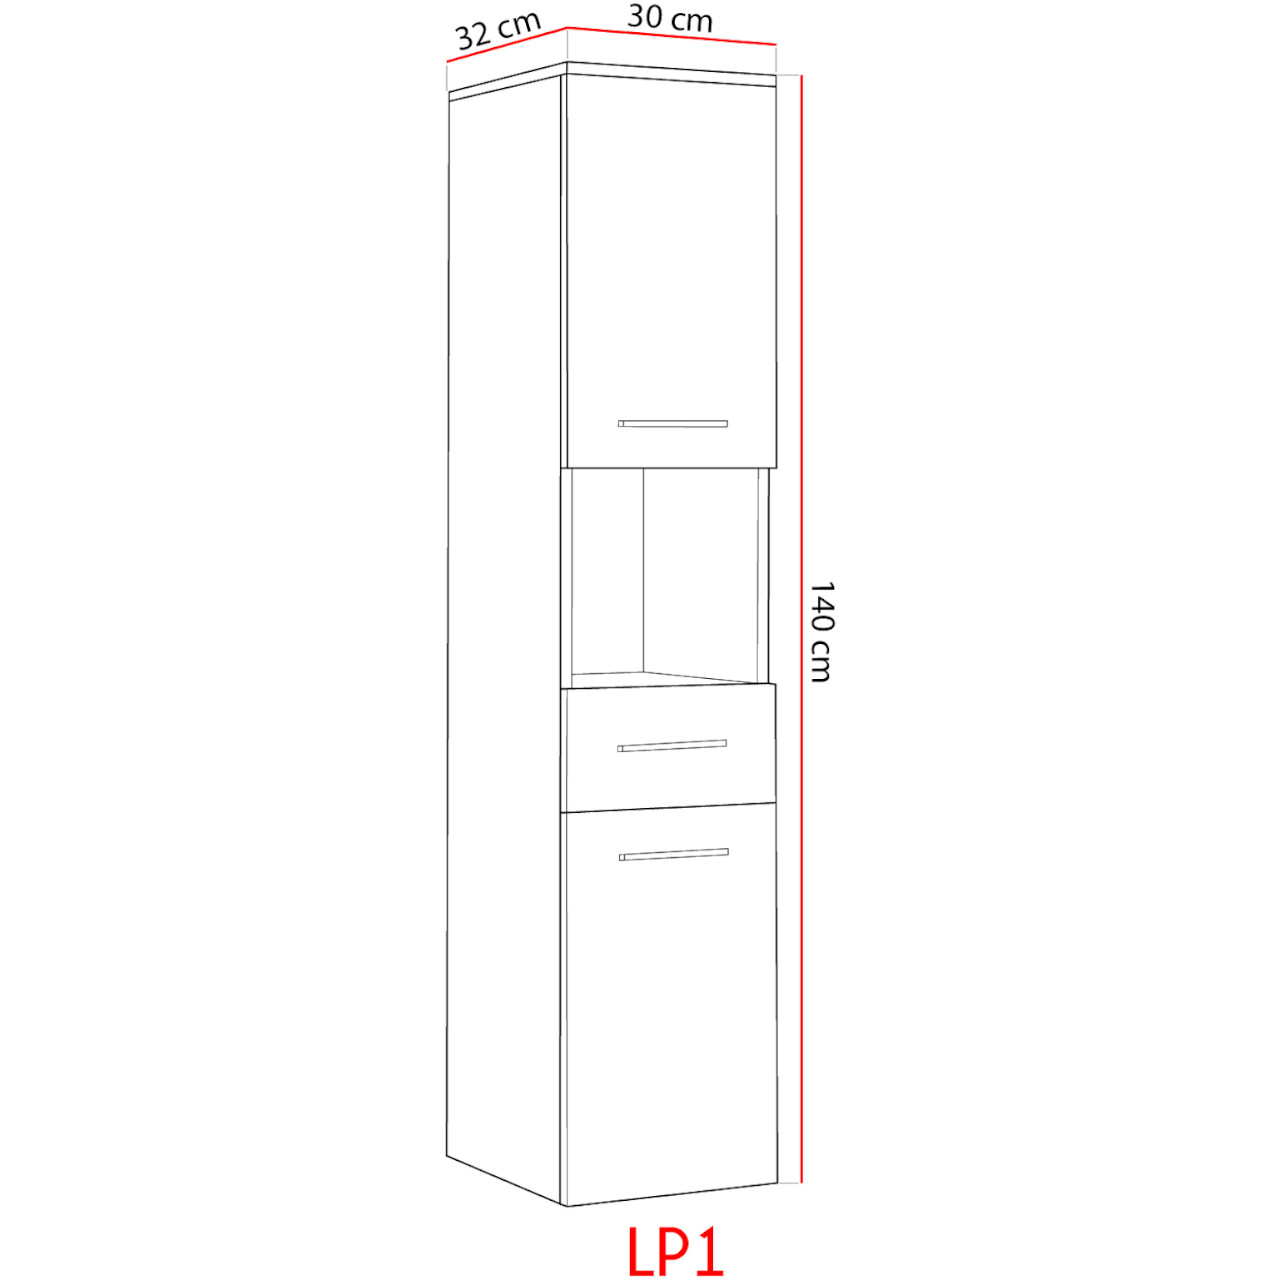 Wymiary: Szafka łazienkowa wysoka LUPO LP1